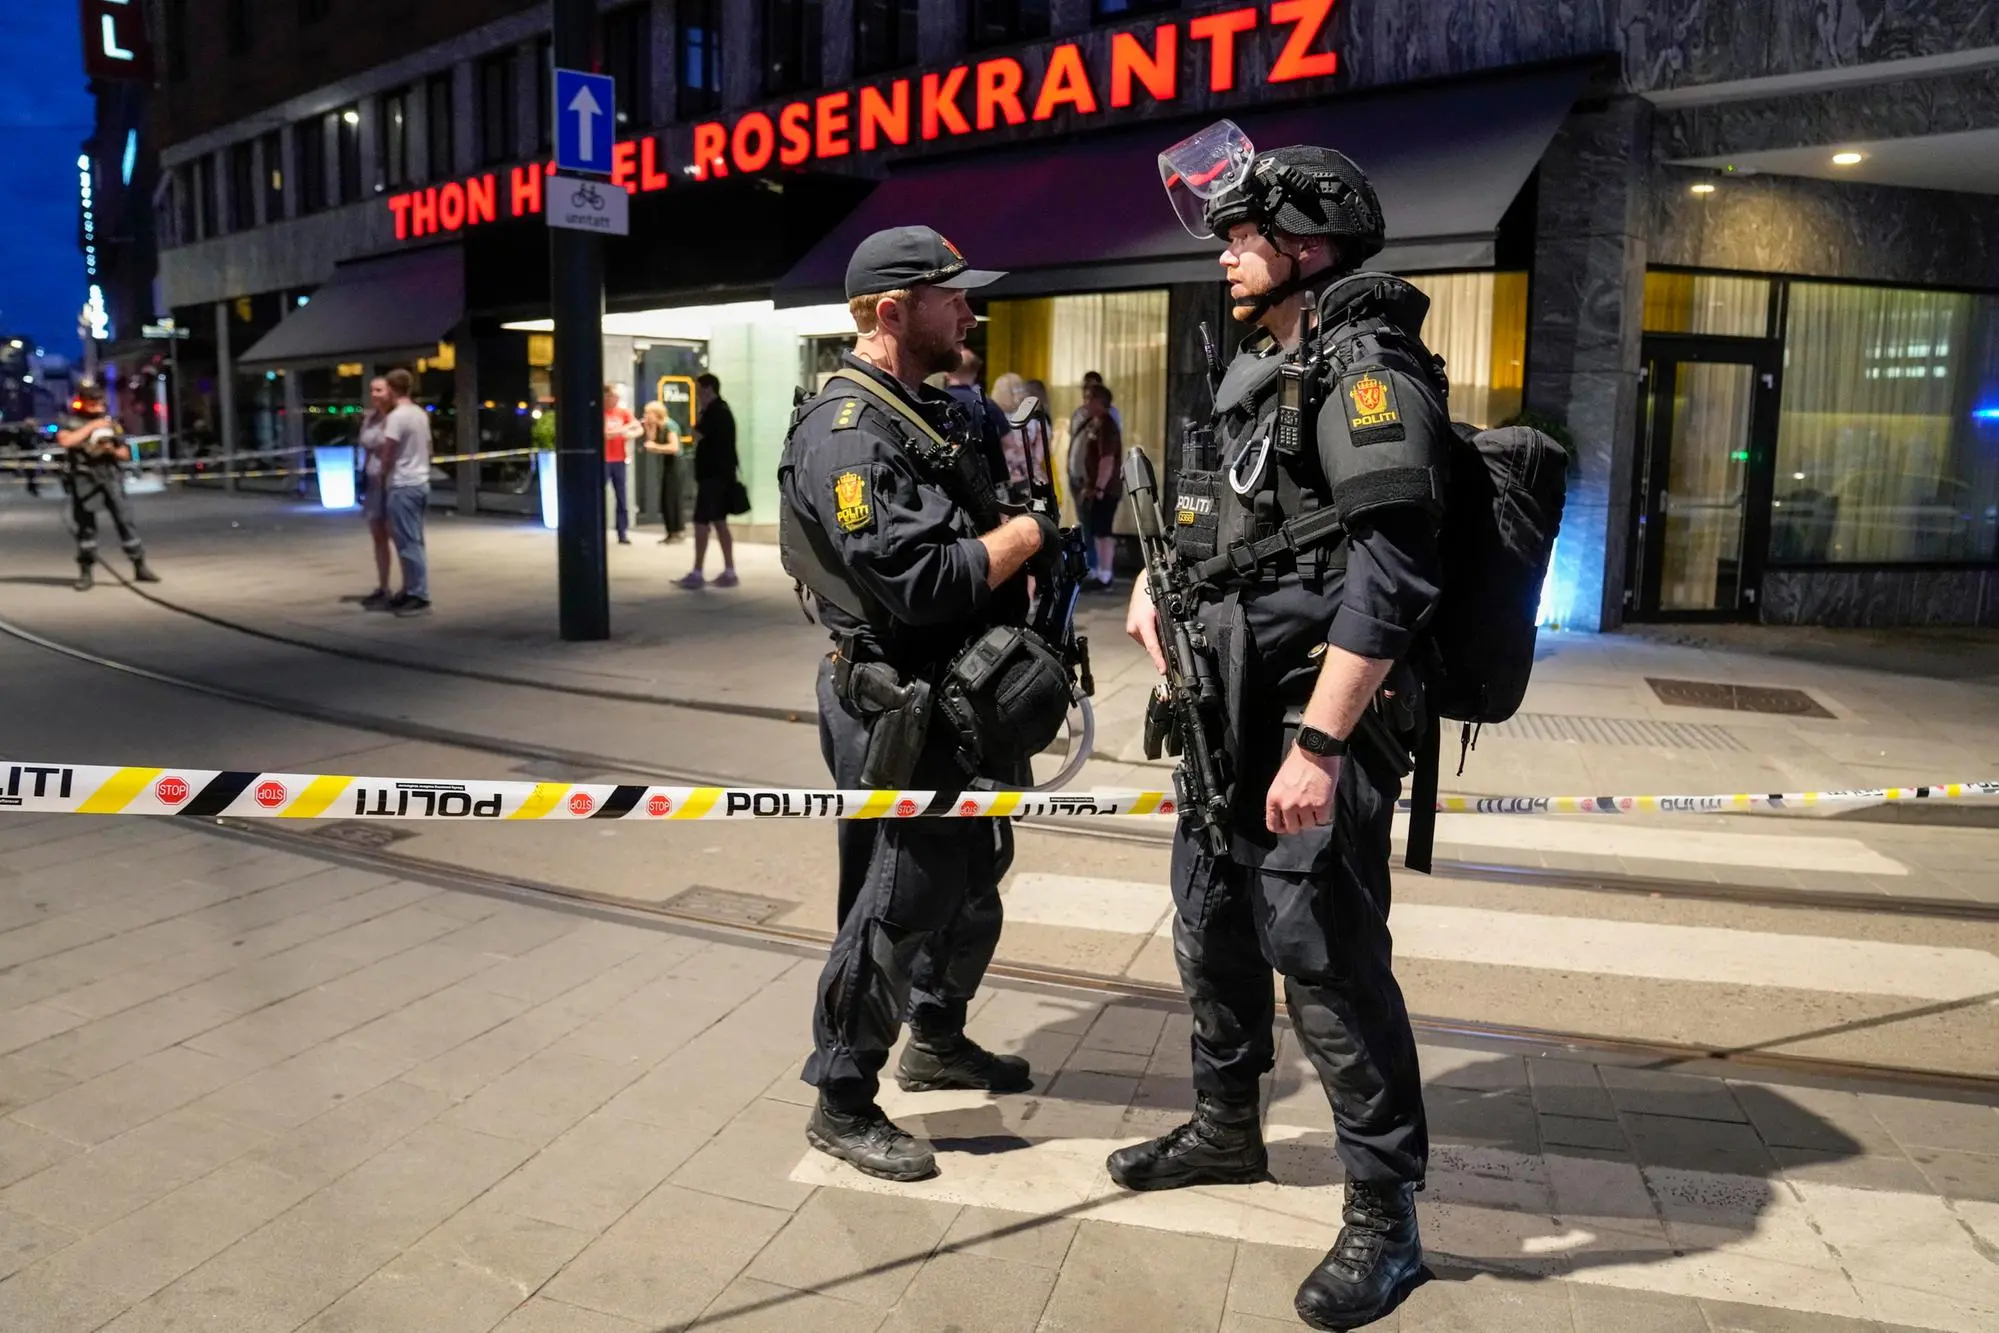 Poliziotti fuori dal London pub, in centro a Oslo (Ansa - Epa)